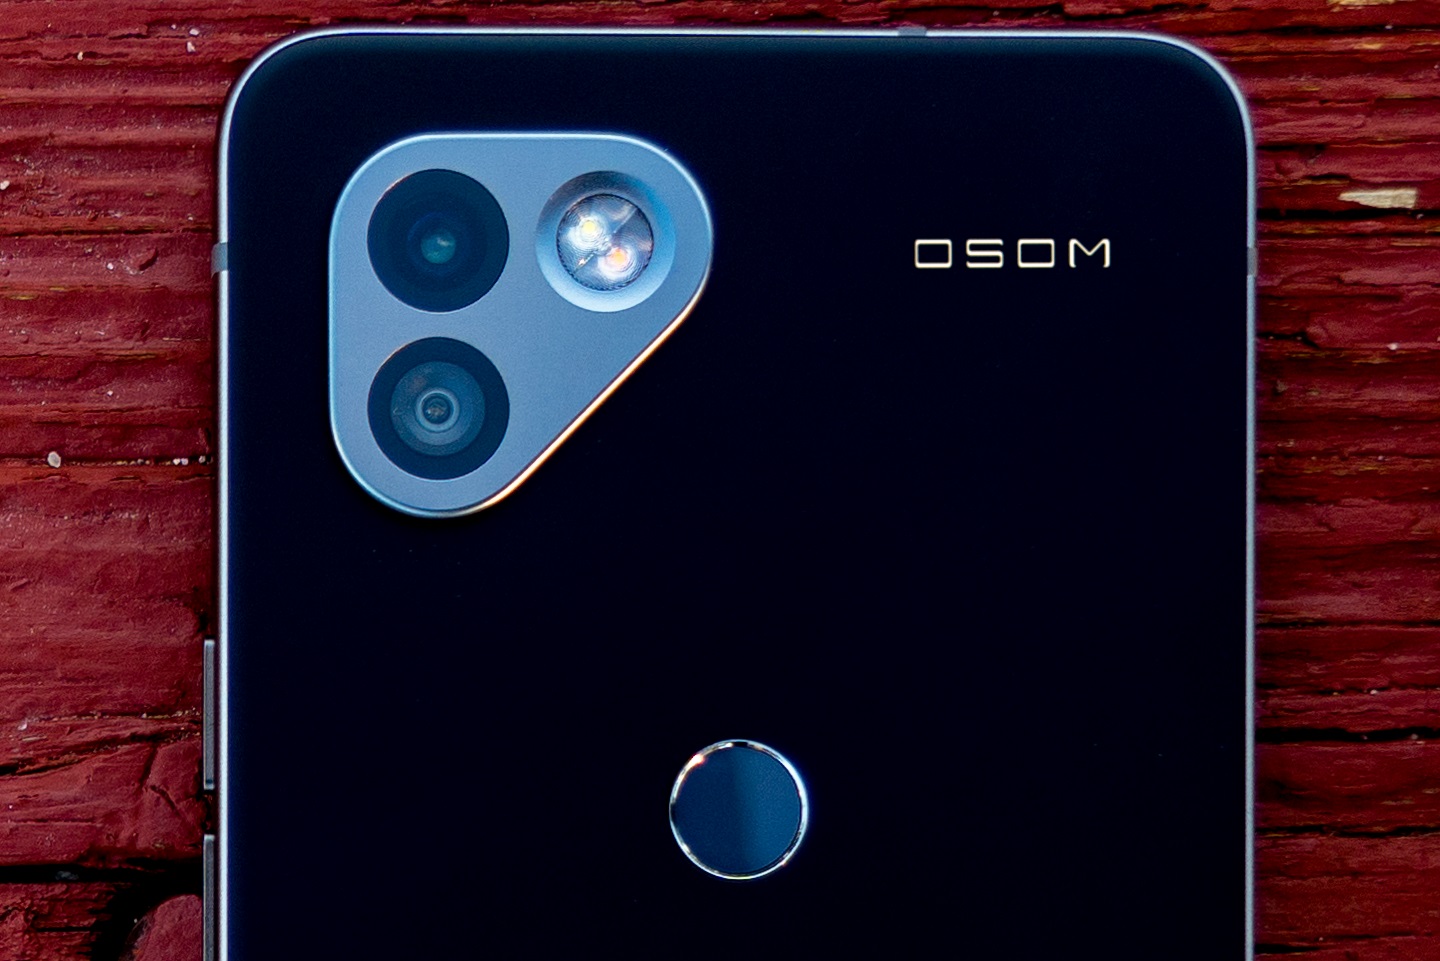 OSOM OV1 est le nouveau smartphone des anciens développeurs d'Essential Phone axé sur la confidentialité